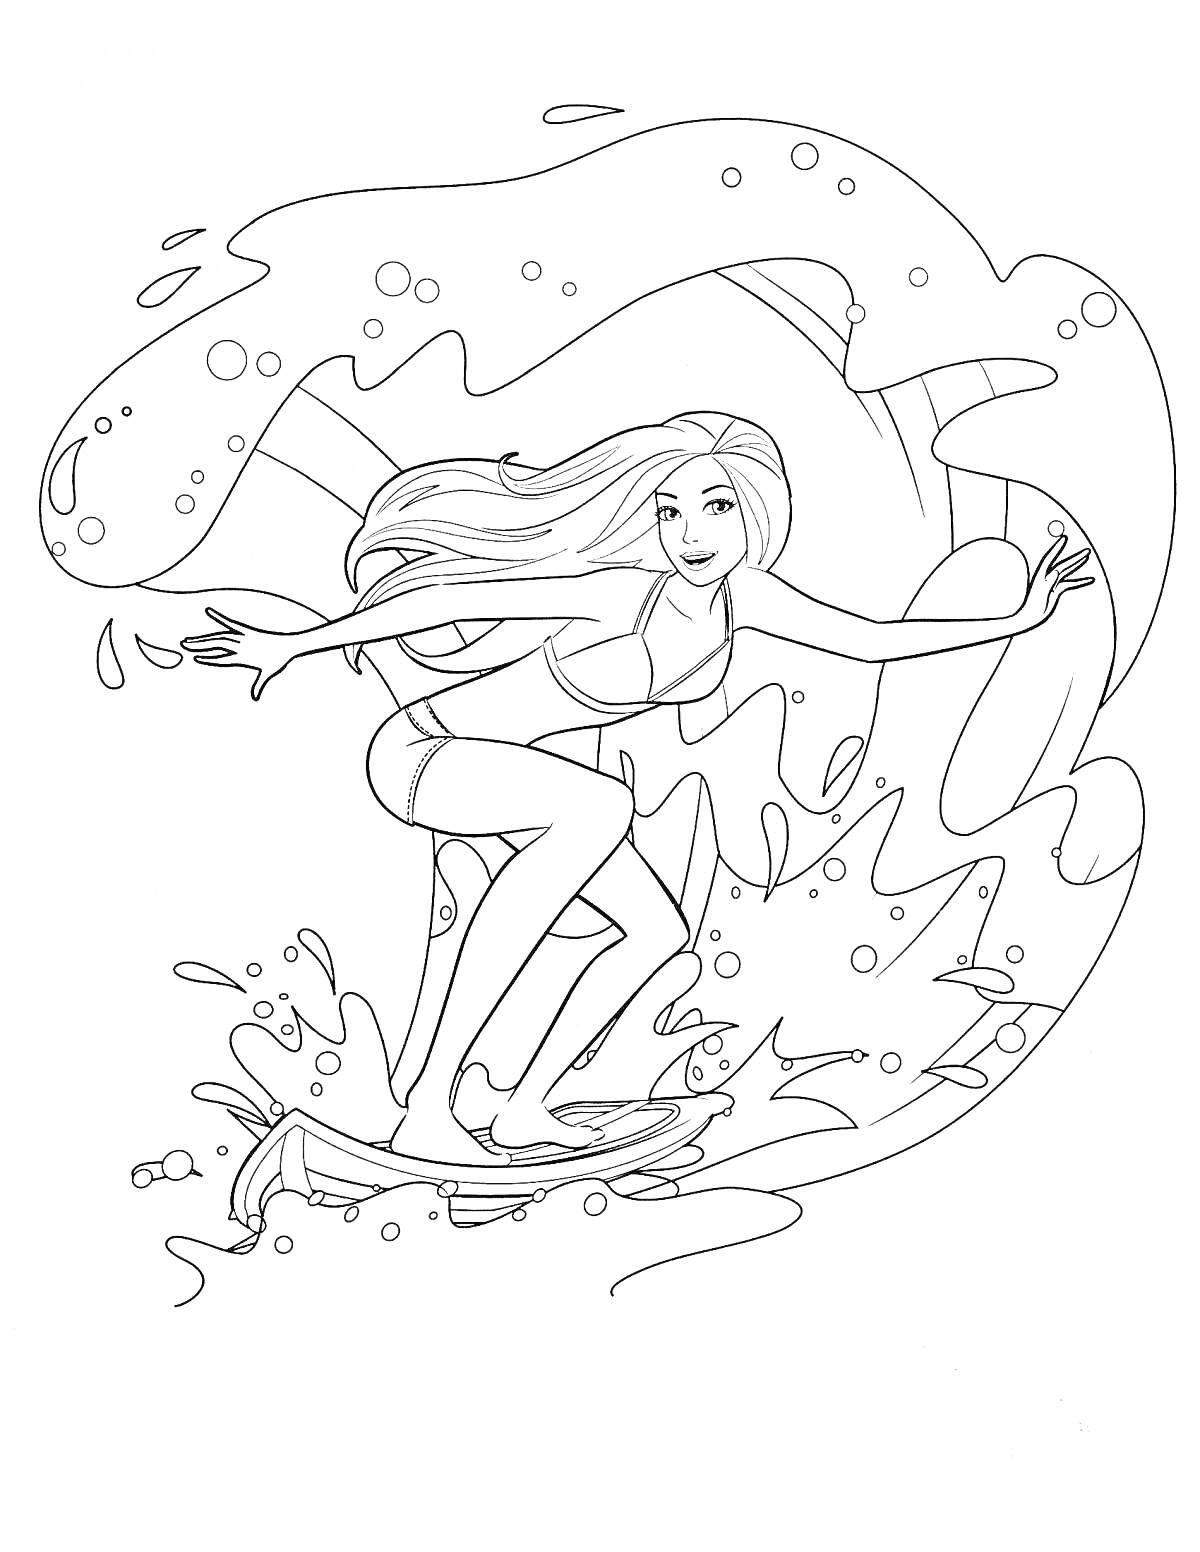 Раскраска Девочка на пляже, катающаяся на серфинге, с длинными волосами в купальнике и брызгами воды вокруг